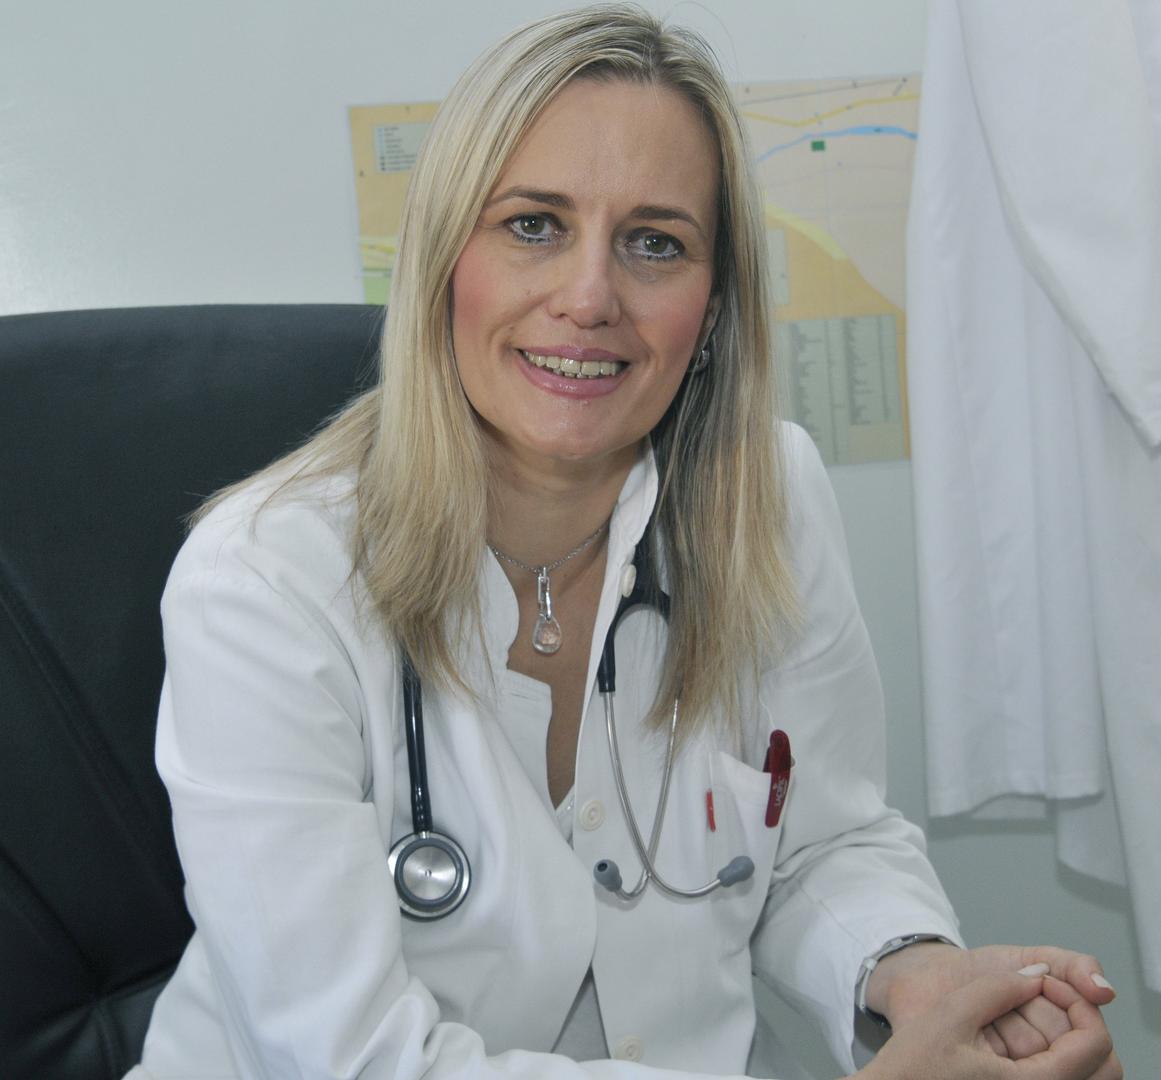 Prof. dr. sc. Monika Tomić: Teško je, gotovo nemoguće, baviti se i medicinom i politikom u isto vrijeme. Morate odabrati jedno